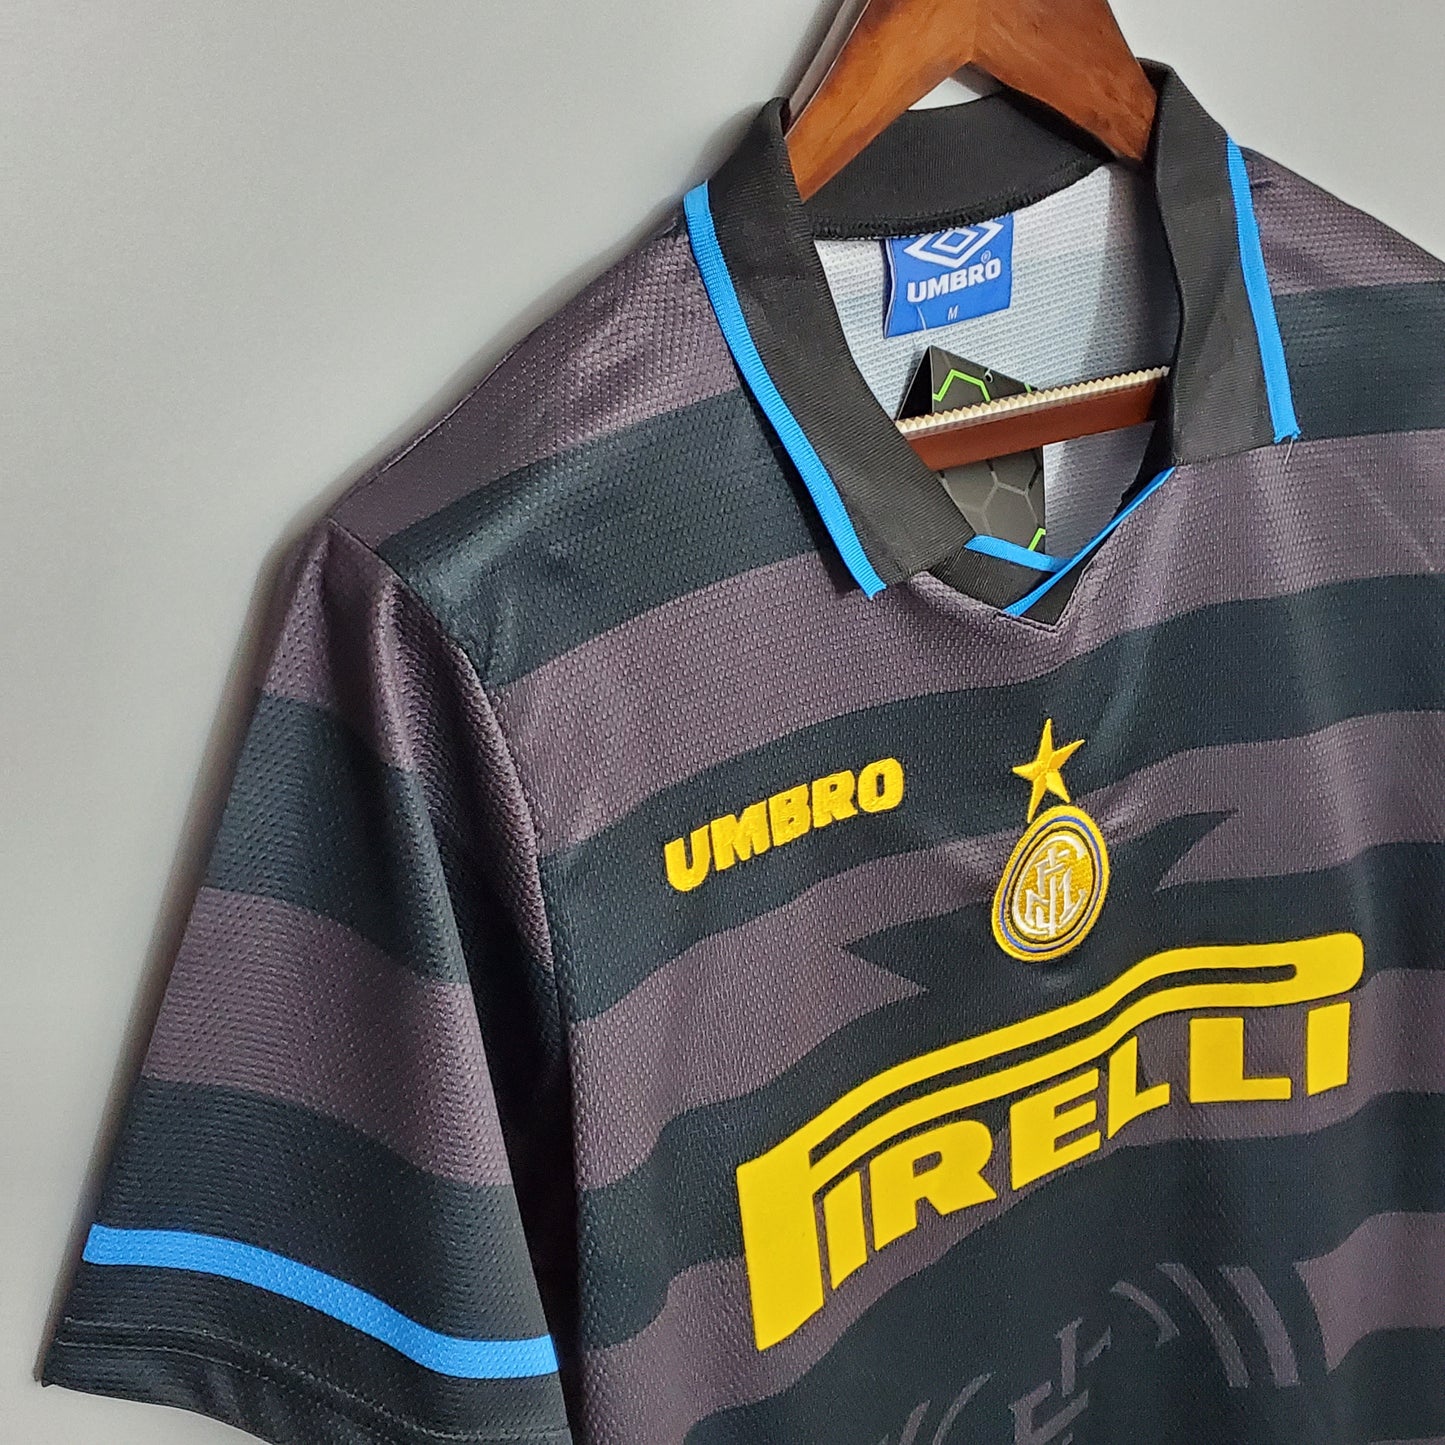 Inter 1997/98 Away Jersey